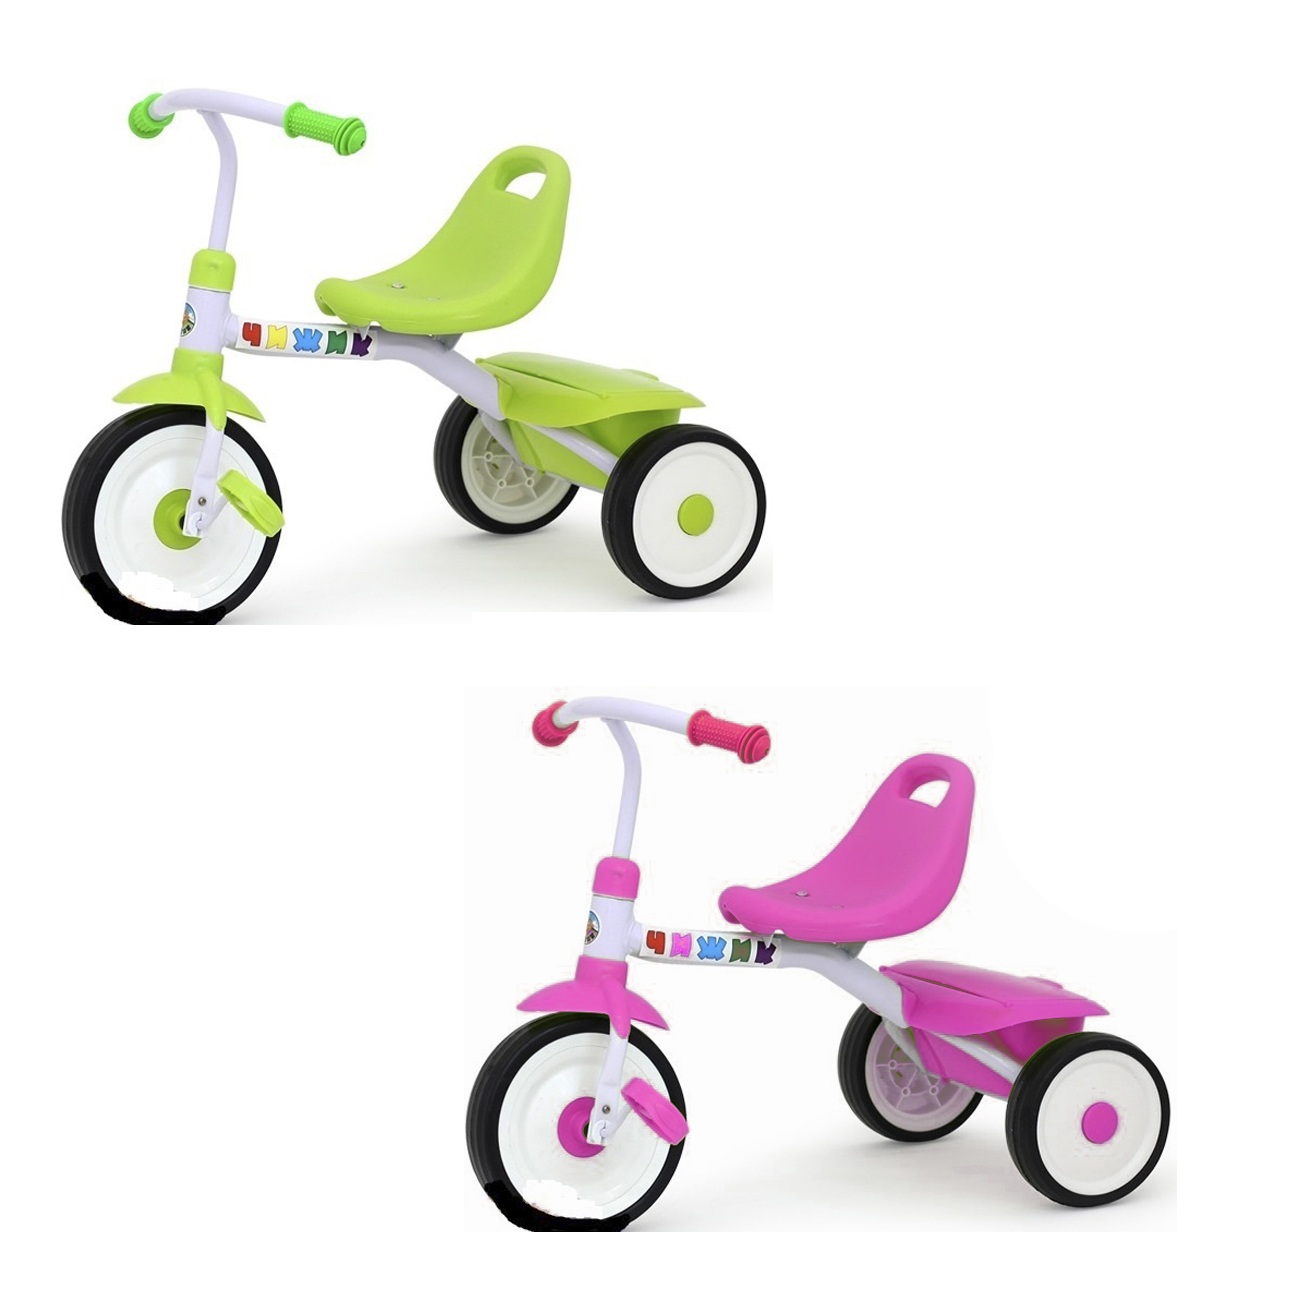 Детские трехколесные велосипеды от 2 лет. Велосипед трехколесный без ручки Чижик. Трехколесный велосипед Светлячок gt9228. Велосипед Чижик зеленый. Велосипед трехколесный 9856.